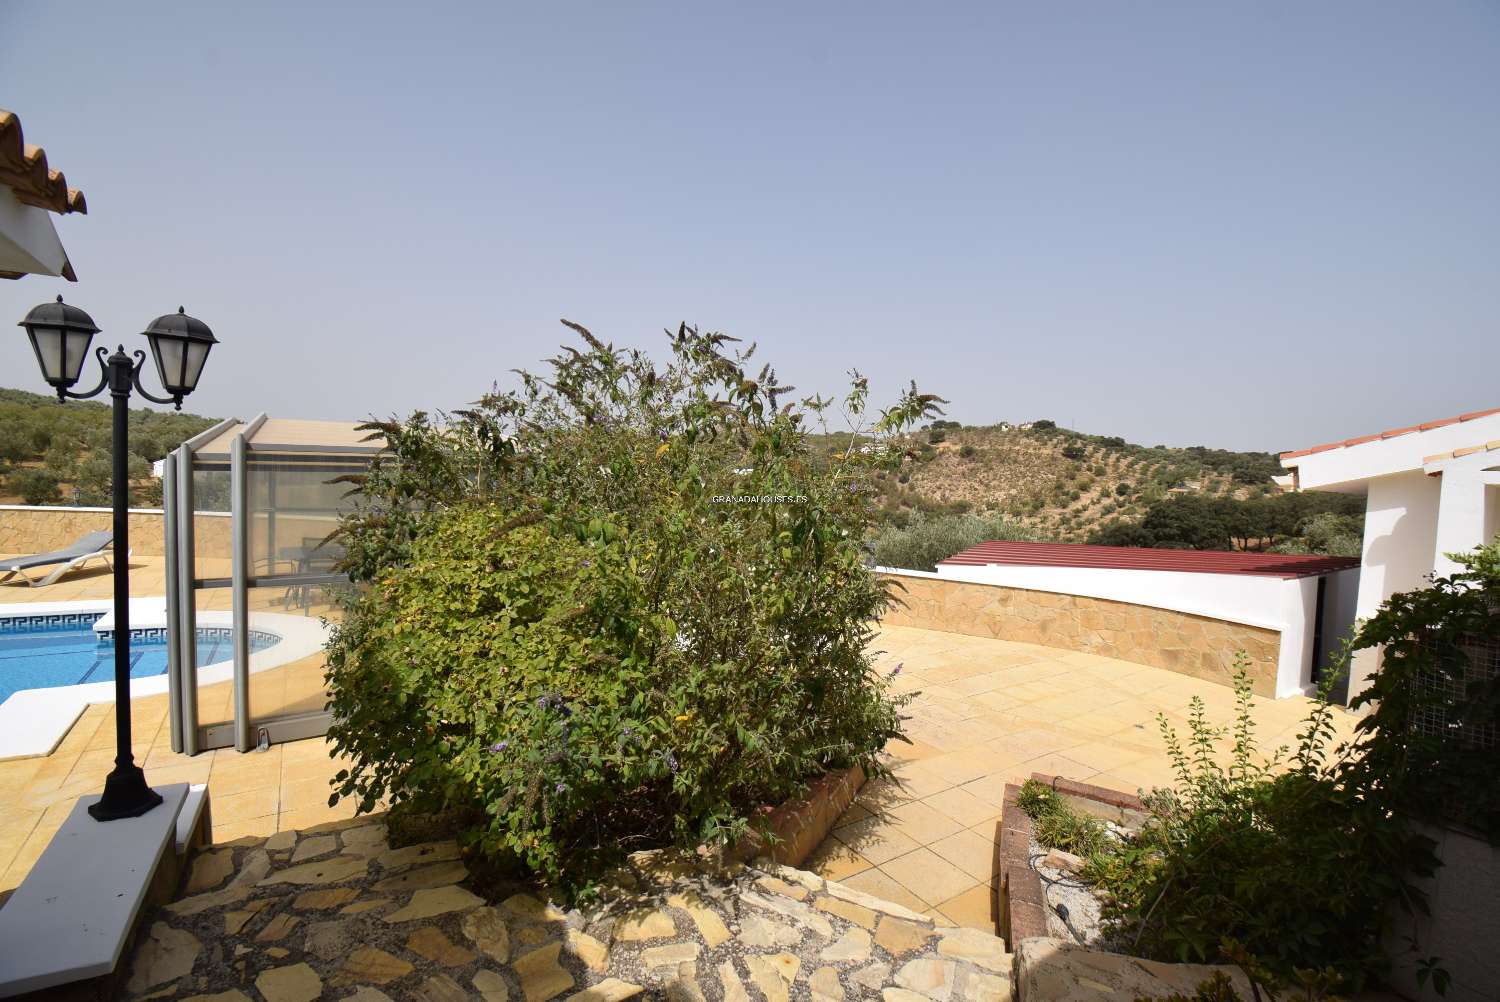 Fantastique villa de campagne avec annexe, jardin, grande piscine et vue imprenable sur les montagnes